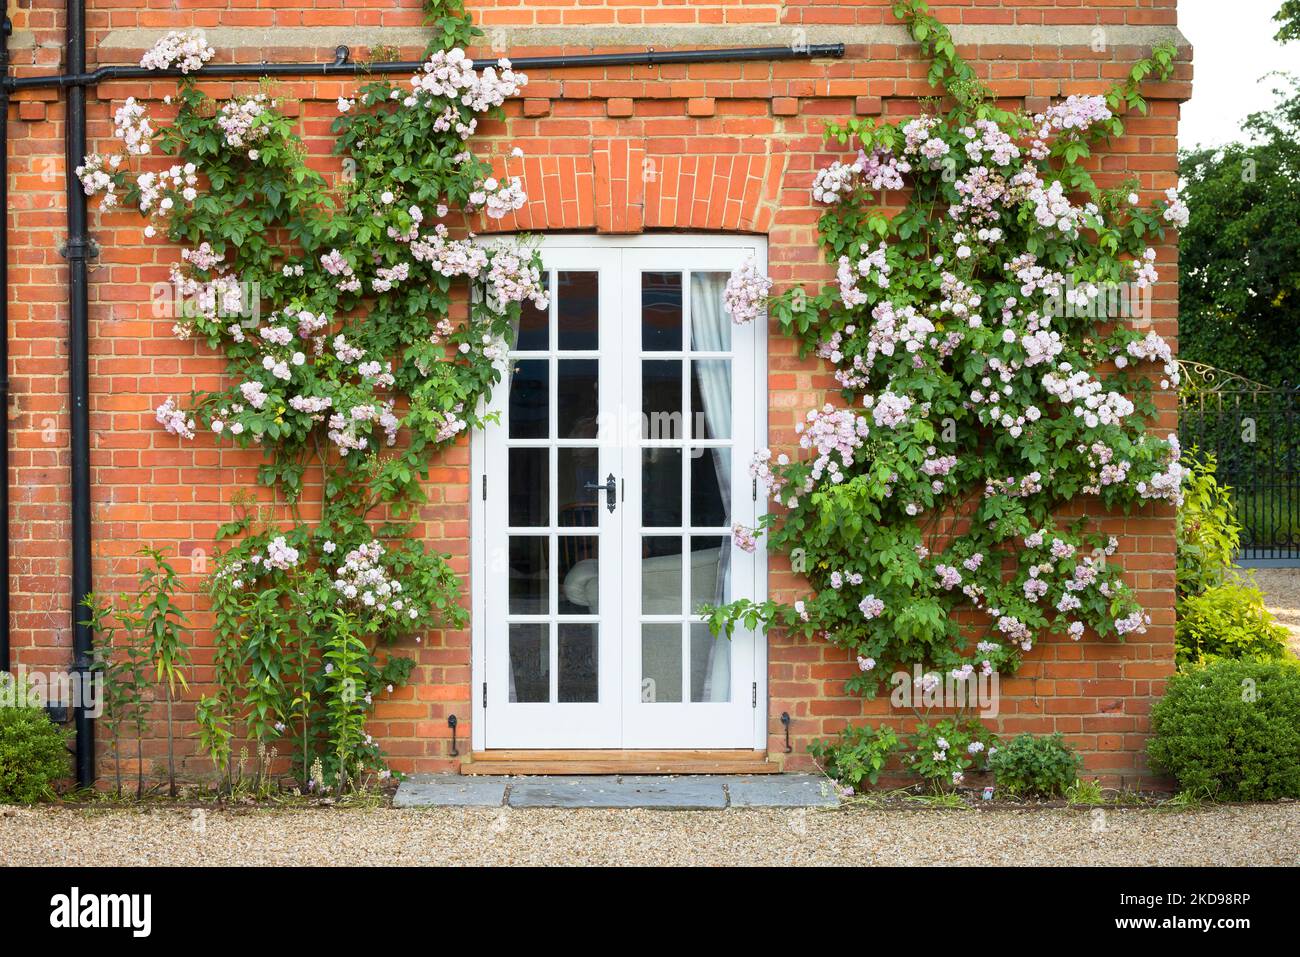 Roses grimpantes poussant sur un mur autour des portes françaises. Extérieur de l'ancienne maison de campagne anglaise, Royaume-Uni Banque D'Images